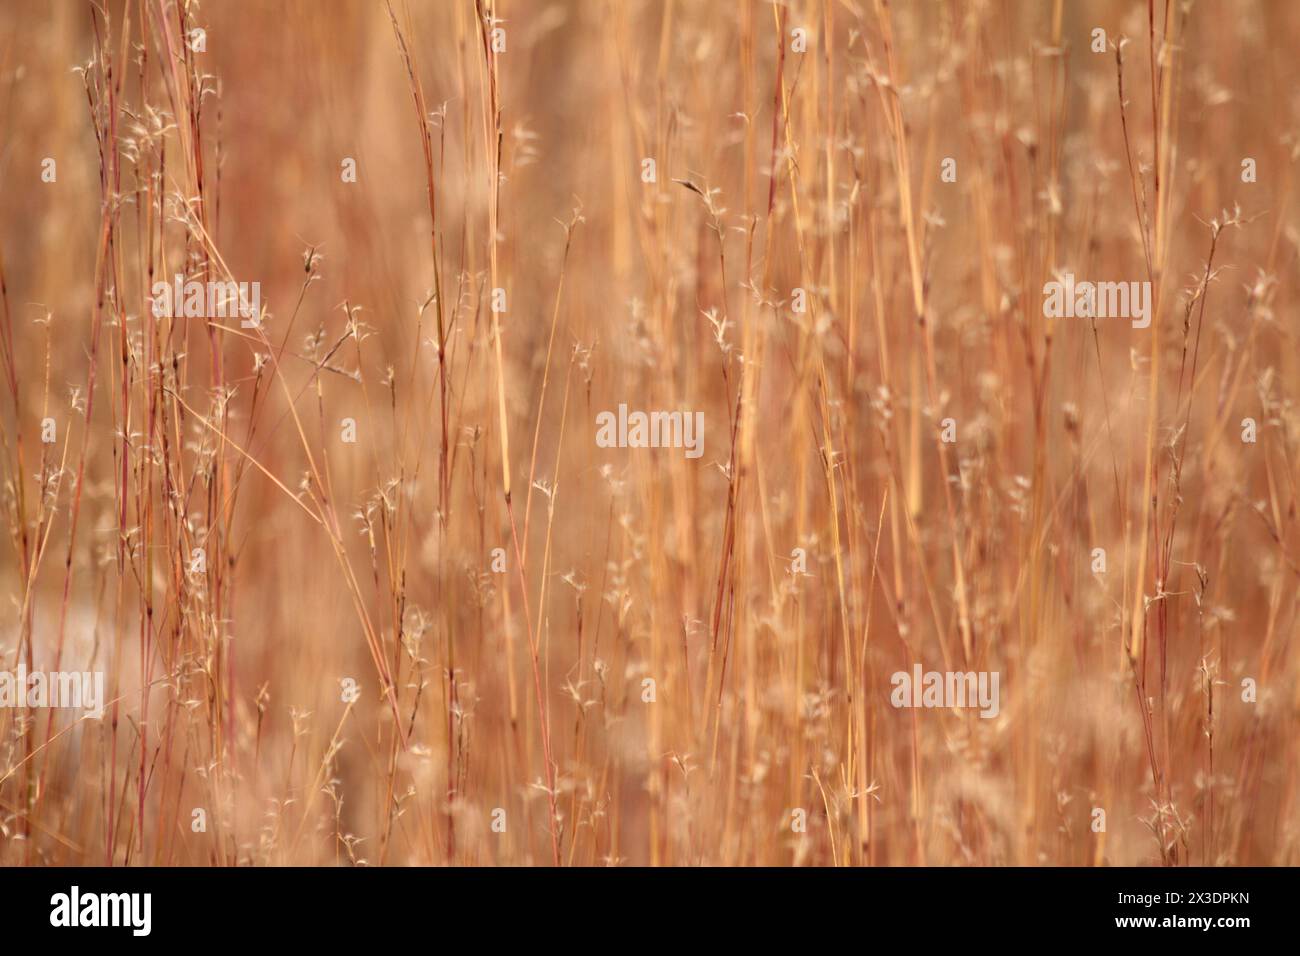 Virginia, U.S.A.  Field of Little Bluestem Grass in wintertime. Stock Photo